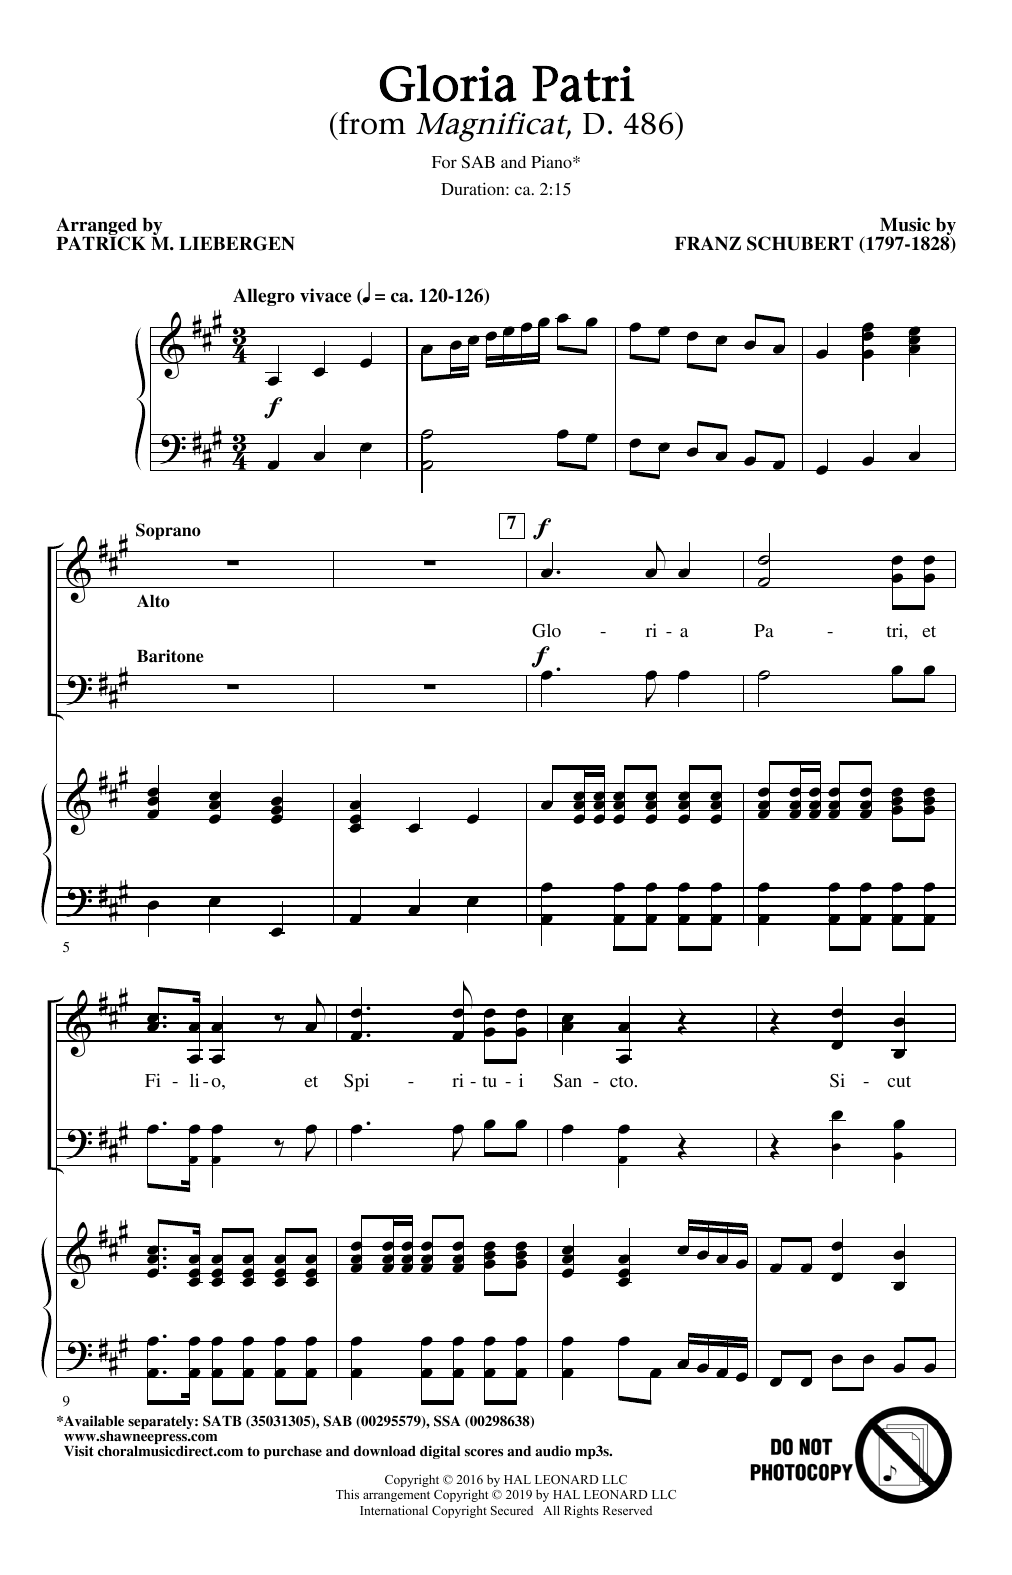 Franz Schubert Gloria Patri (from Magnificat, D. 486) (arr. Patrick M. Liebergen) sheet music notes and chords arranged for SAB Choir